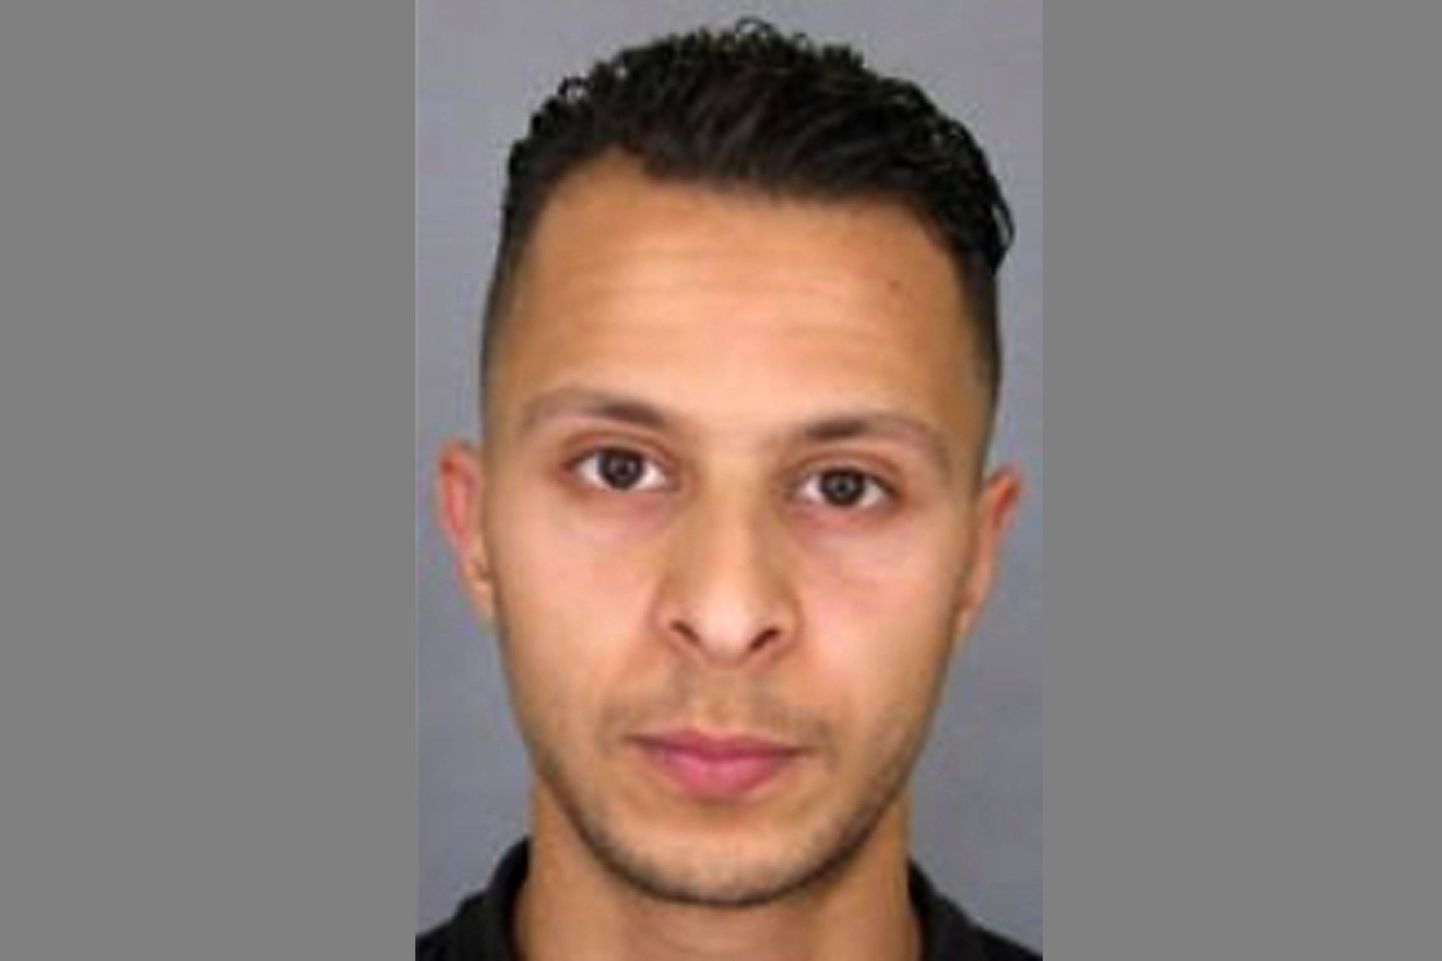 Novembris aset leidnud Pariisi rünnakute üks süüaluseid Salah Abdeslam.